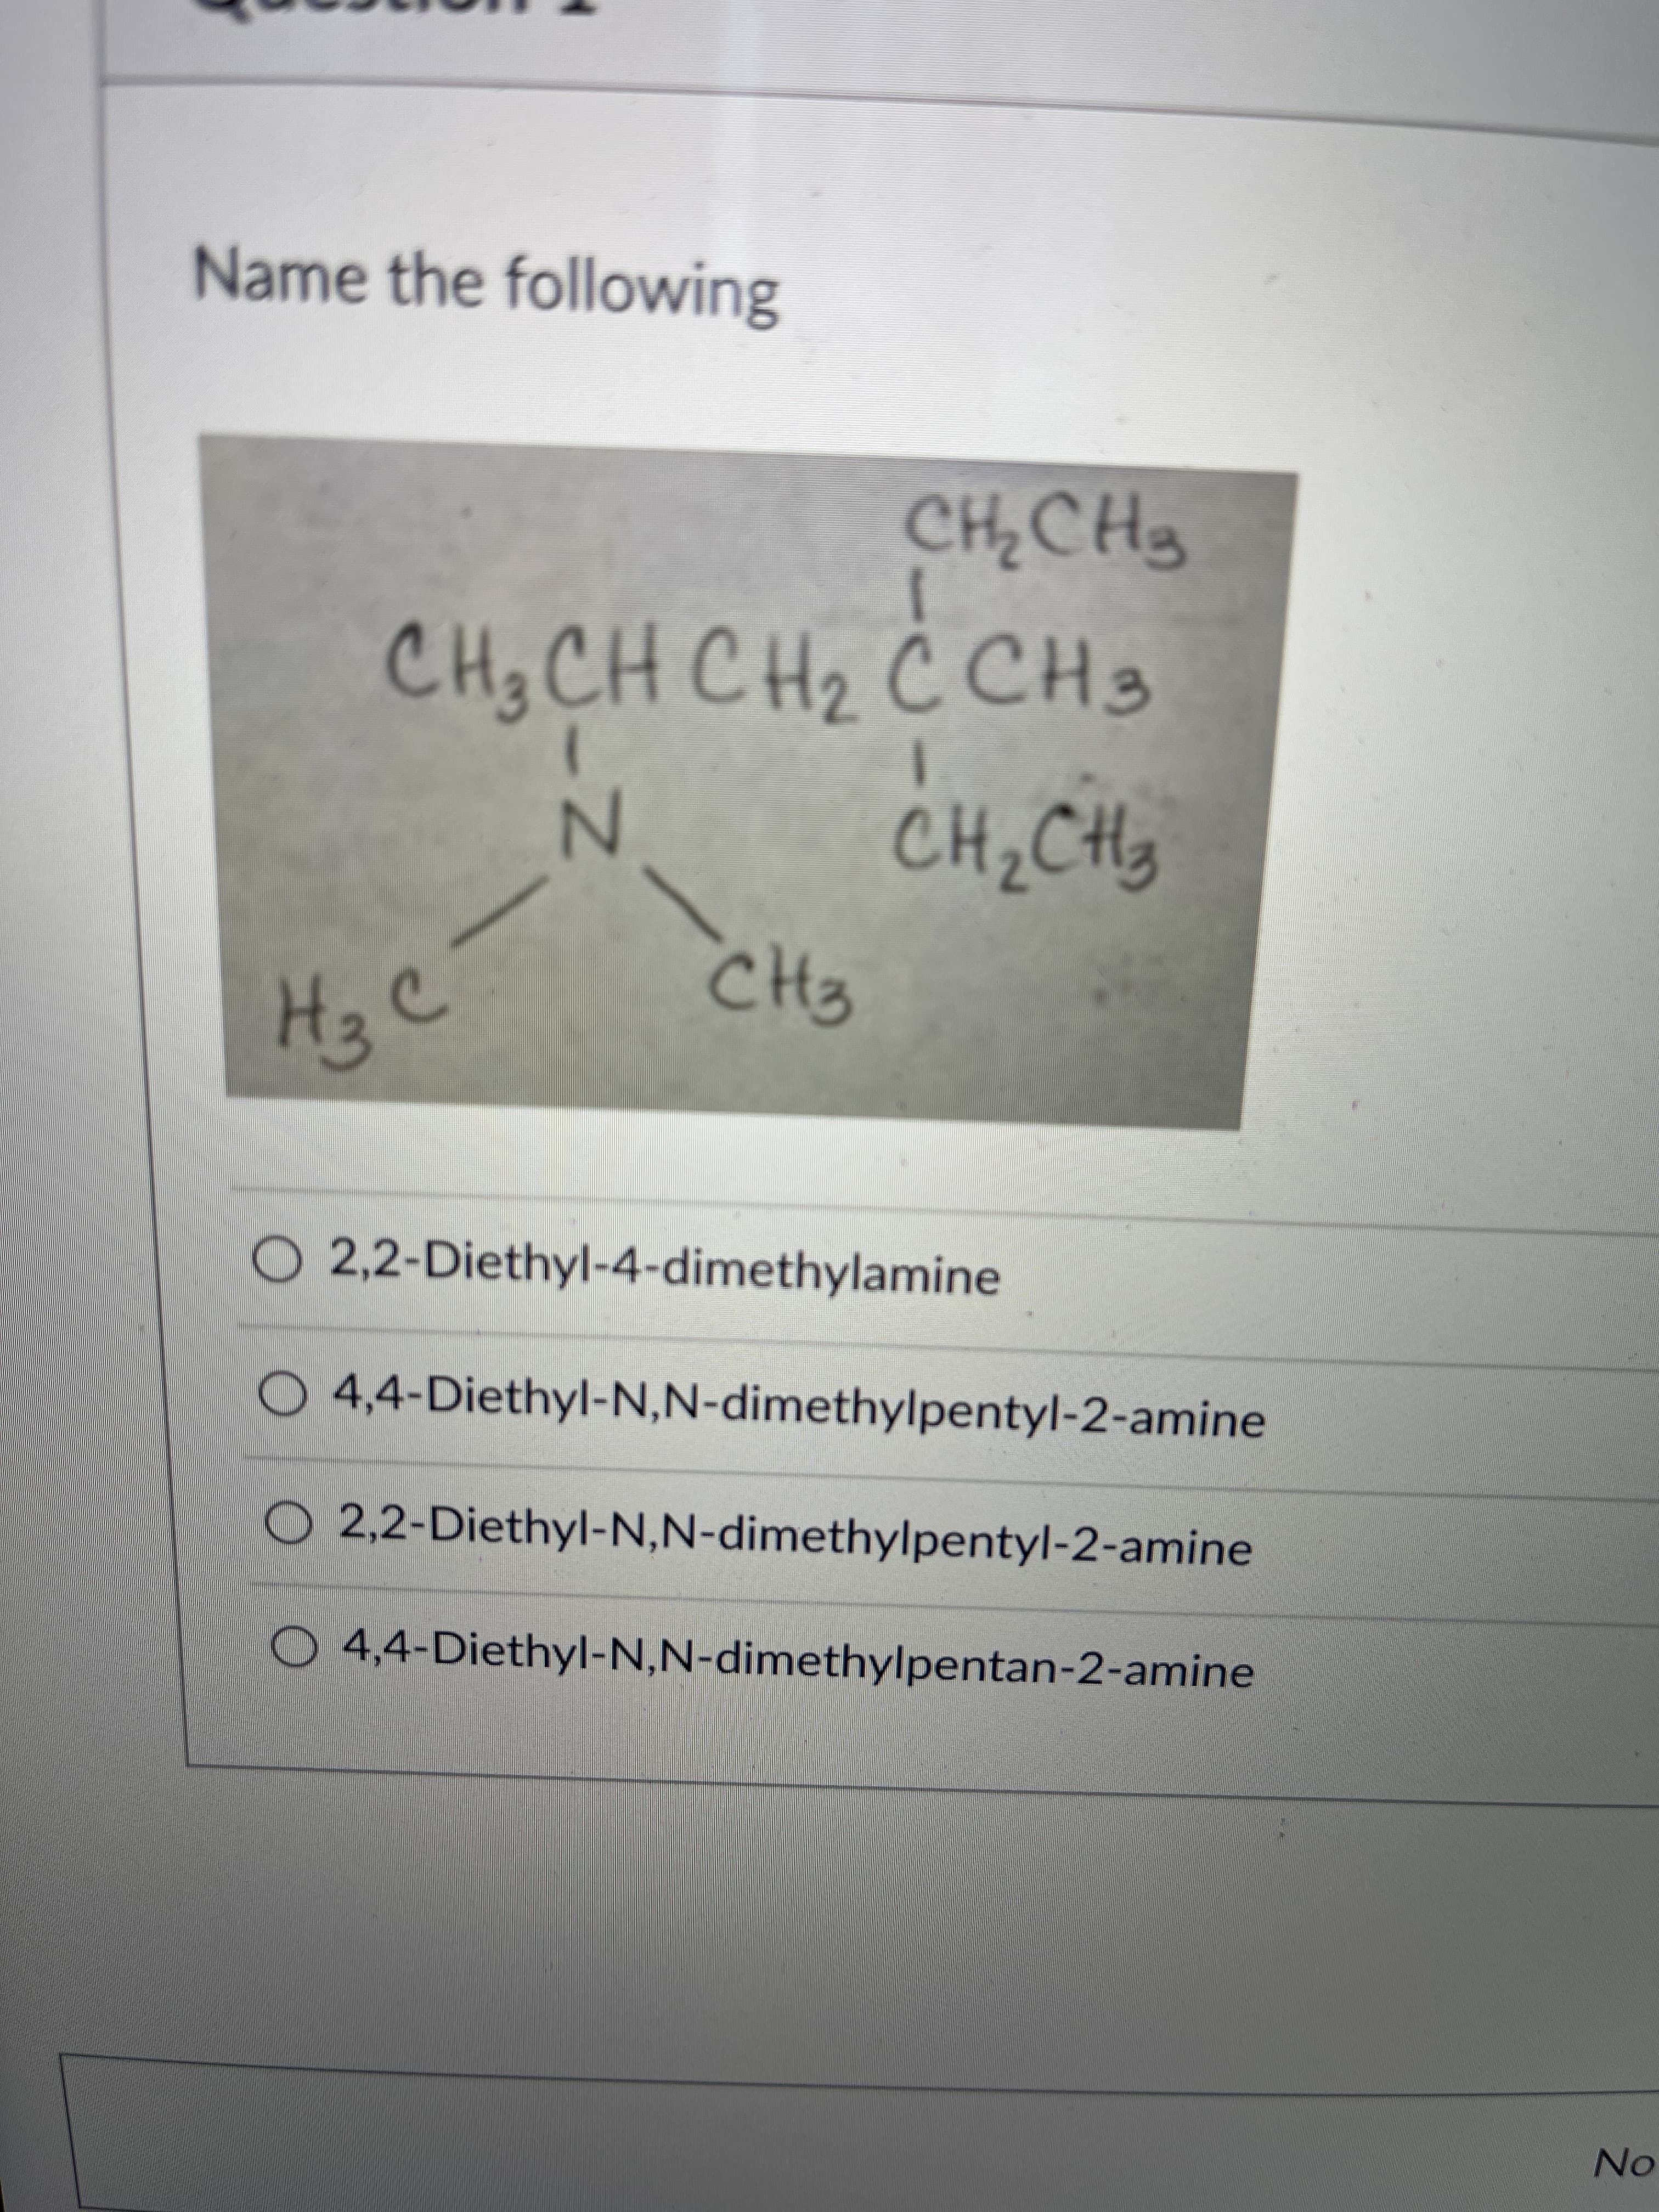 chyl-4-dimethylamine
chyl-N,N-dimethylpentyl-2-amine
chyl-N,N-dimethylpentyl-2-amine
chyl-N,N-dimethylpentan-2-amine
